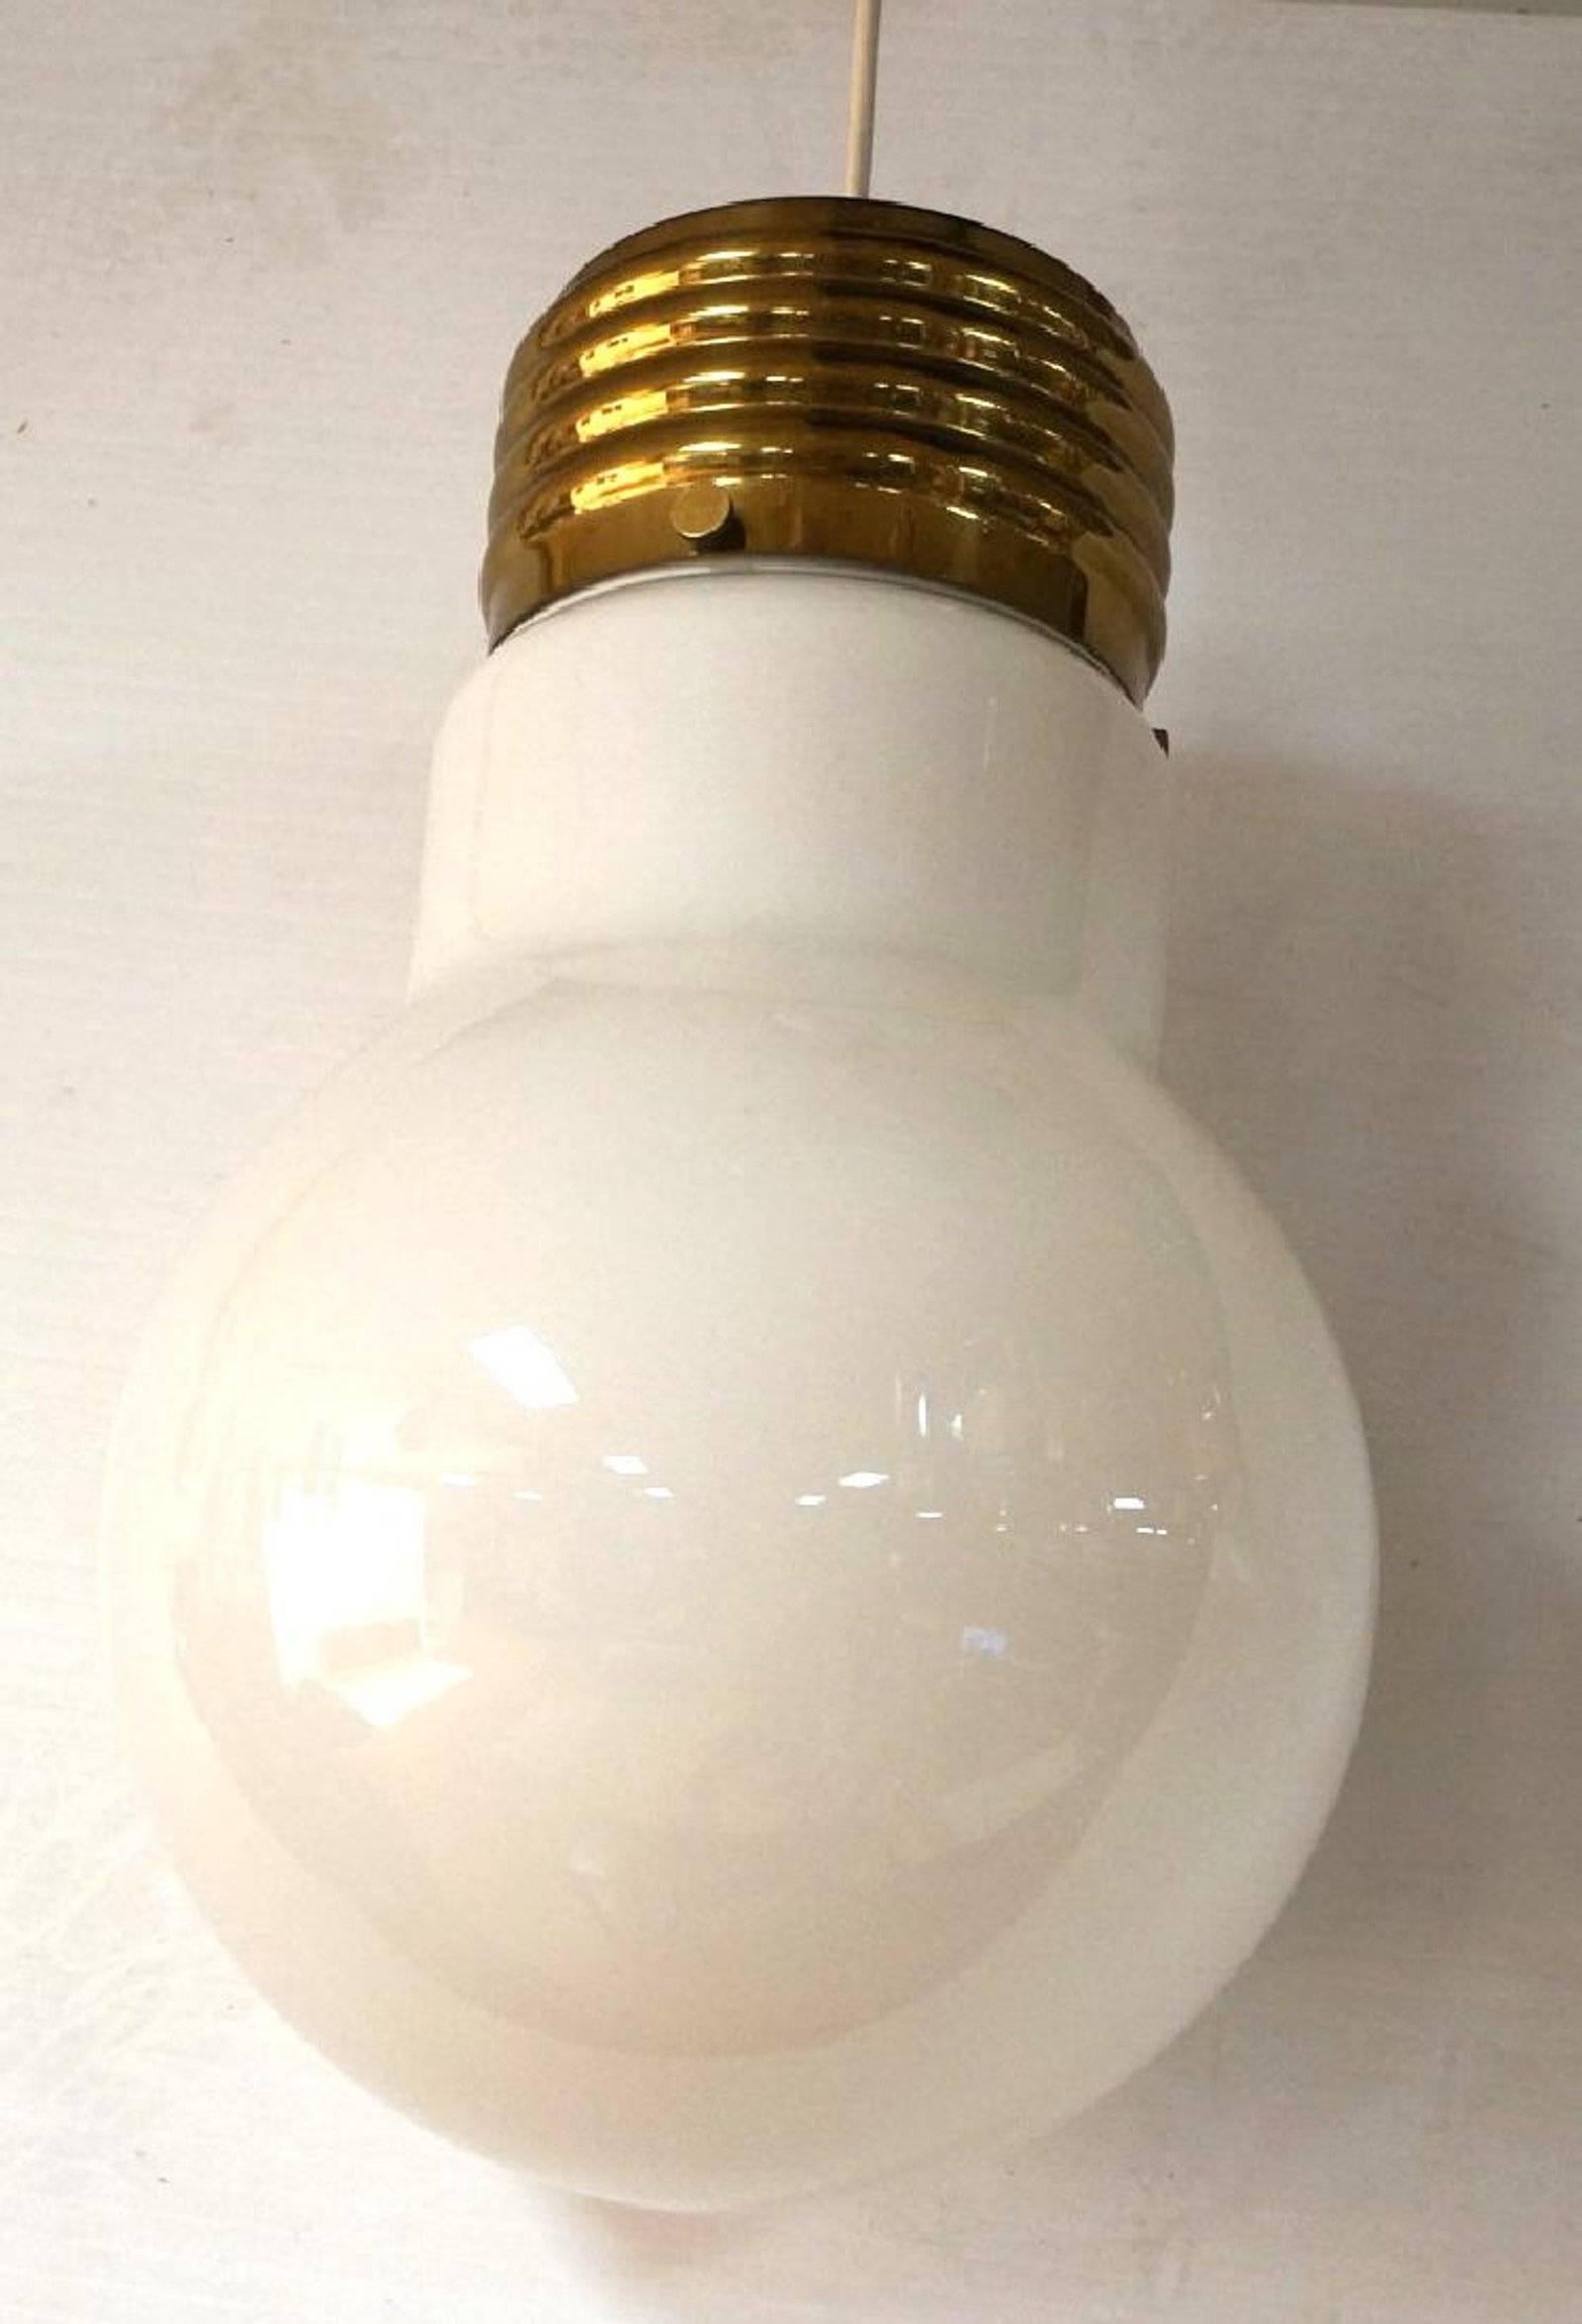 Pop Art light bulb pendant chandelier.